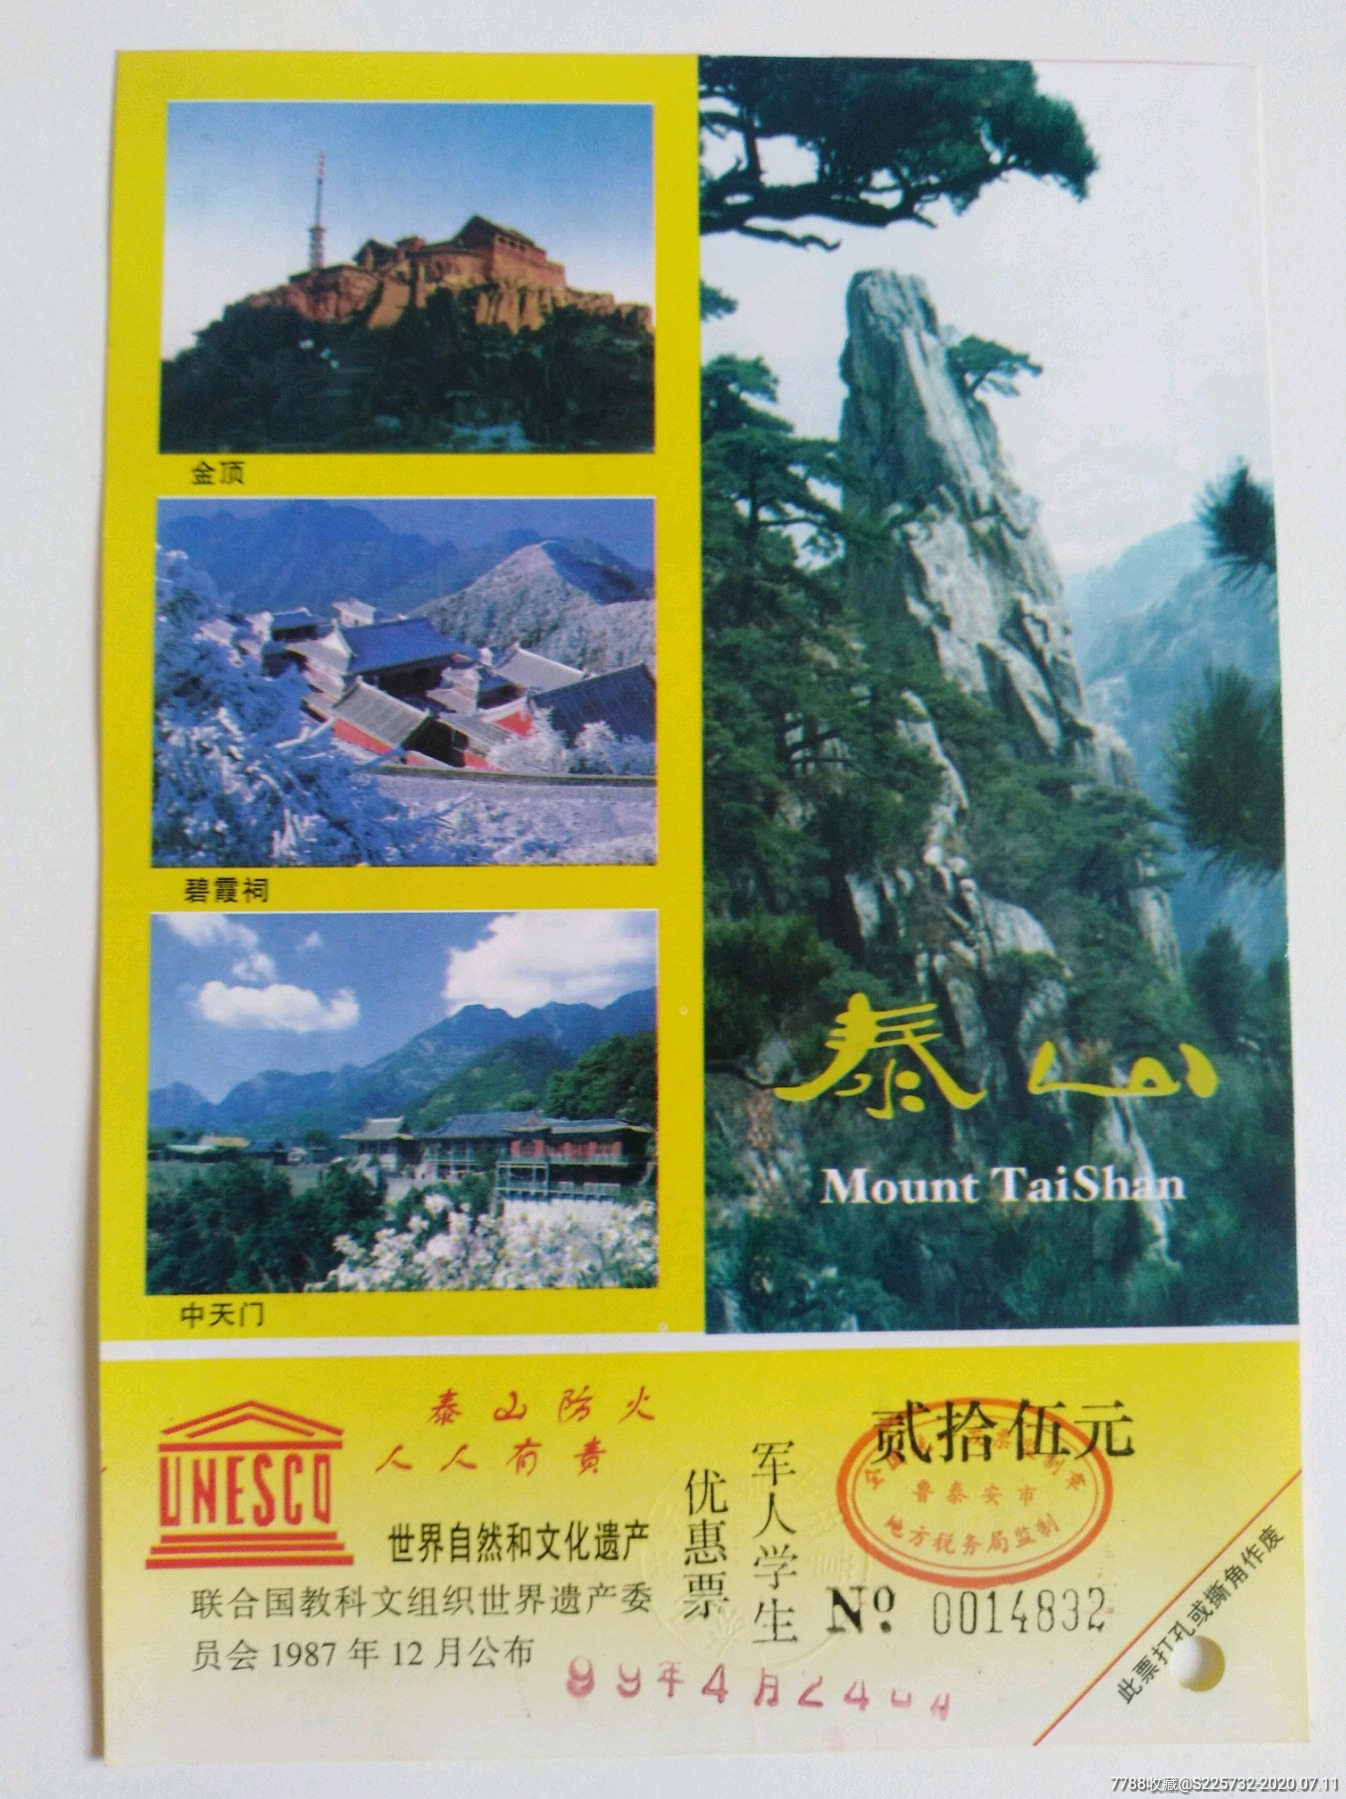 泰山风景区门票预订图片